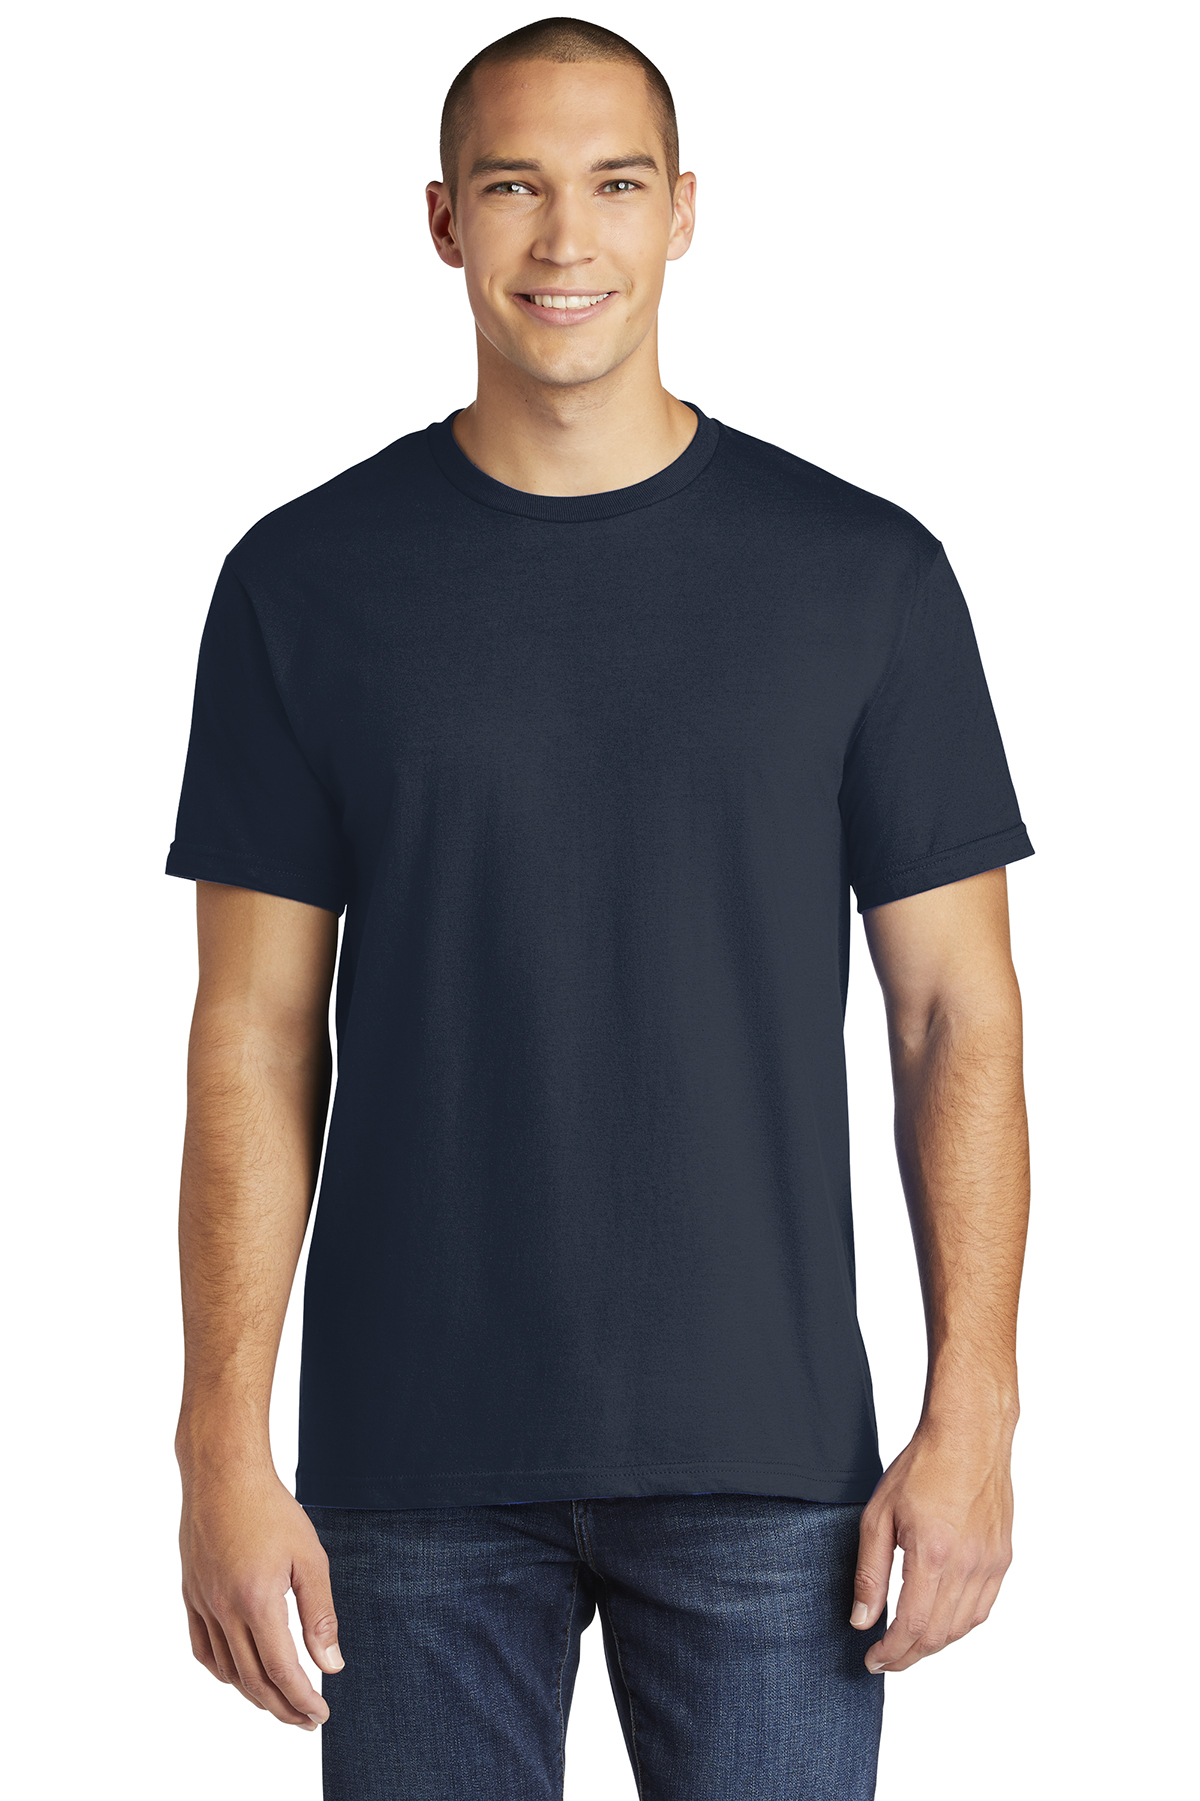 Gildan Hammer T-Shirt | Product | Company Casuals